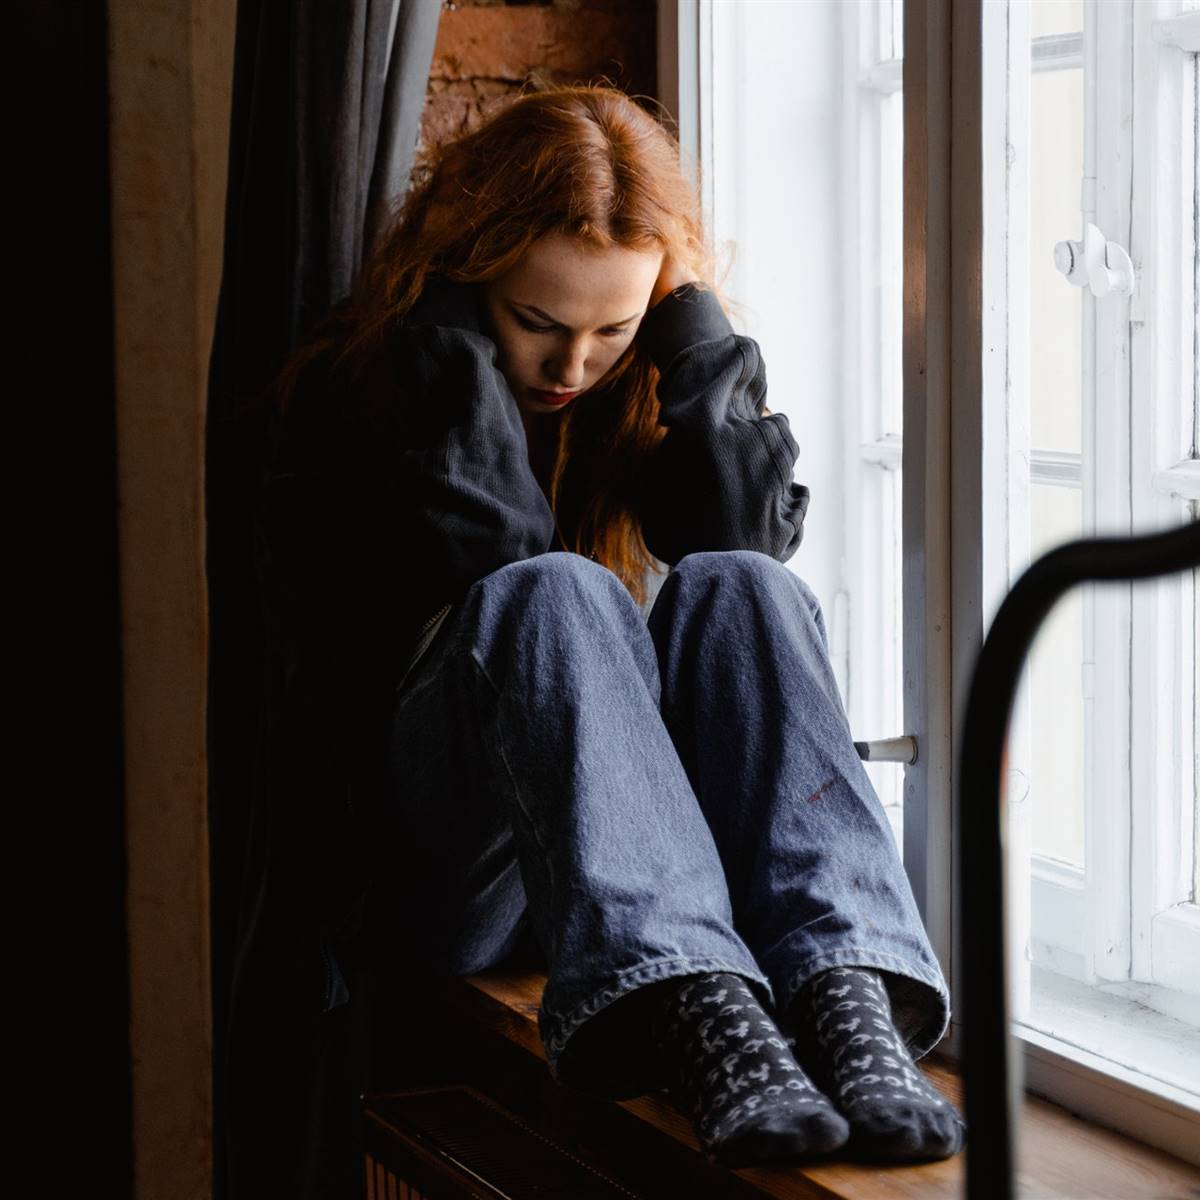 Chica cabizbaja sentada junto a una ventana